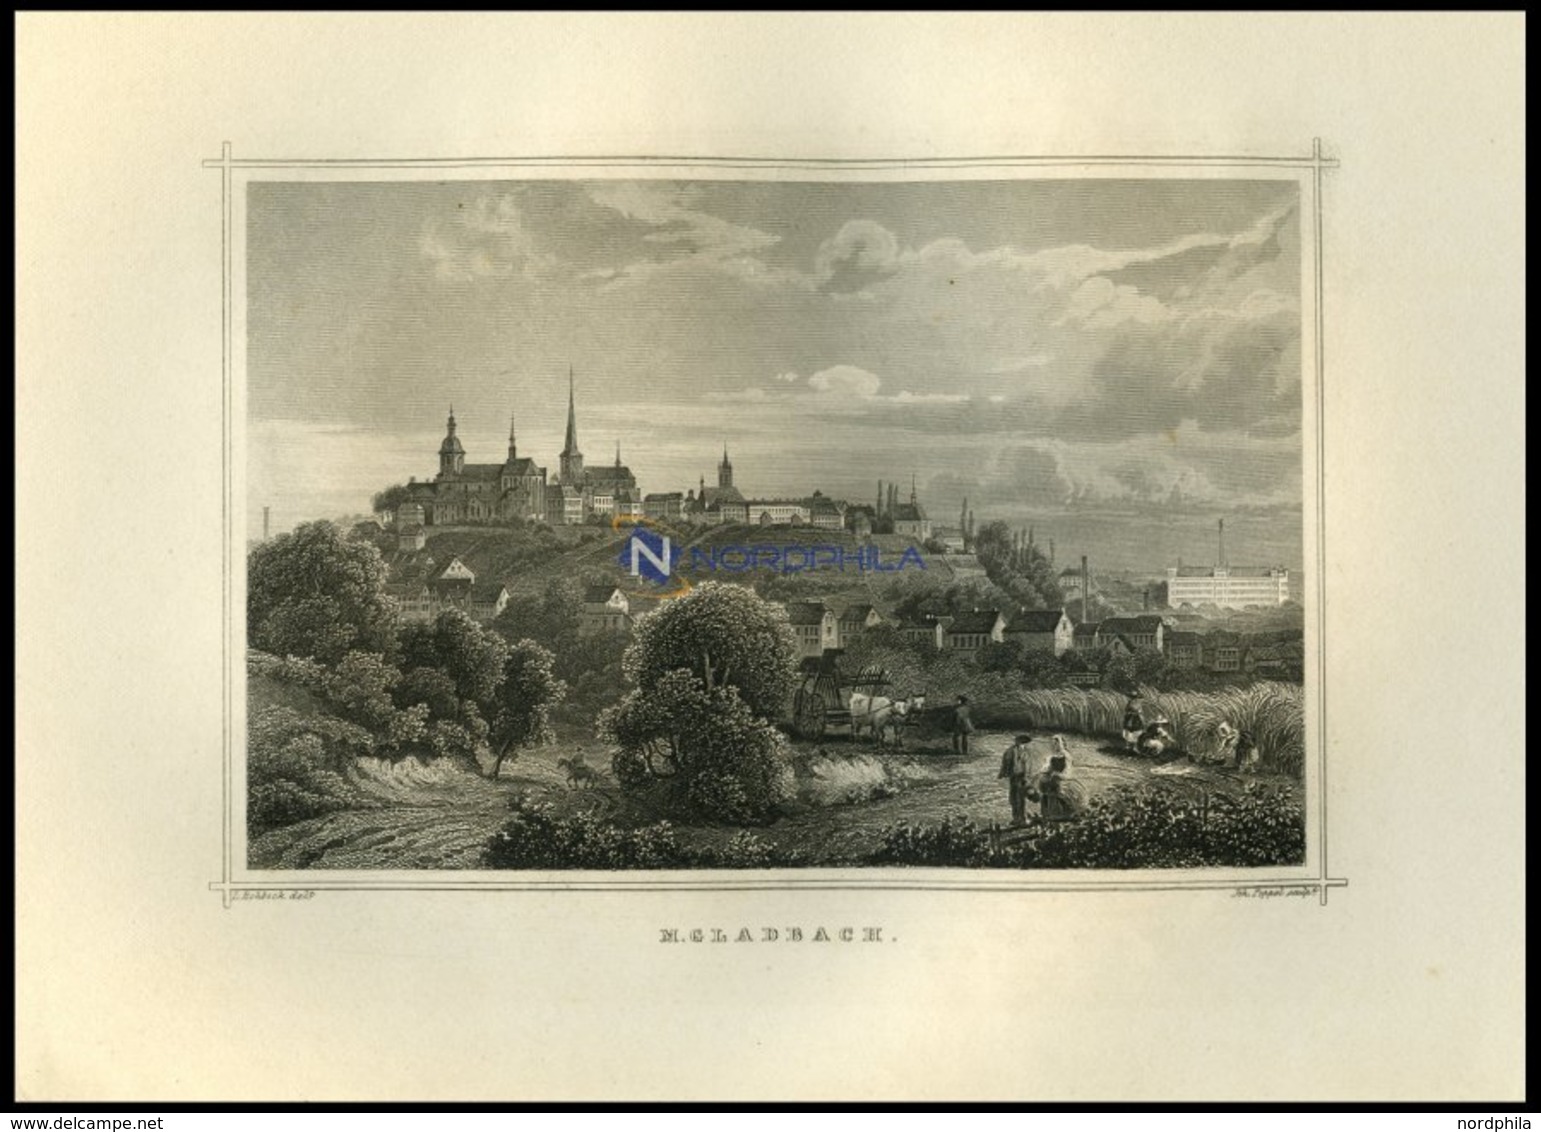 GLADBACH, Gesamtansicht Mit Hübscher Personenstaffage Im Vordergrund, Stahlstich Von Rohbock/Poppel Um 1850 - Litografía